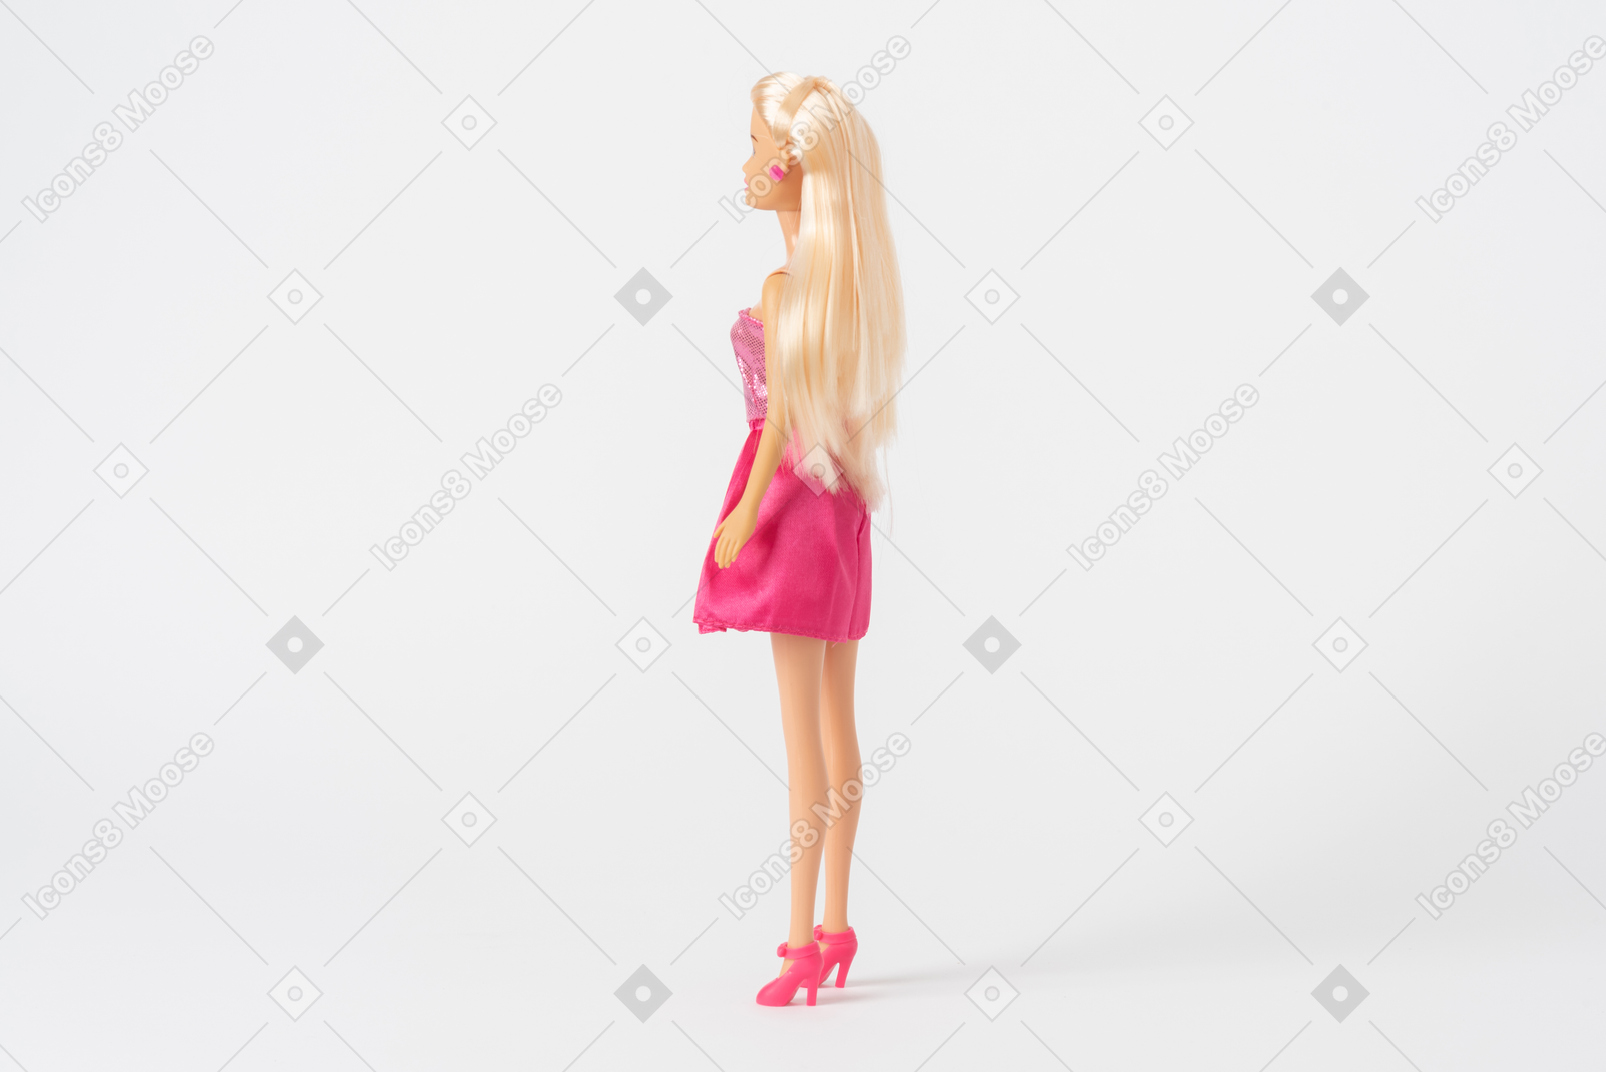 Un coup de côté d'une poupée barbie dans une robe rose brillante et des talons hauts roses, debout isolé sur un fond blanc